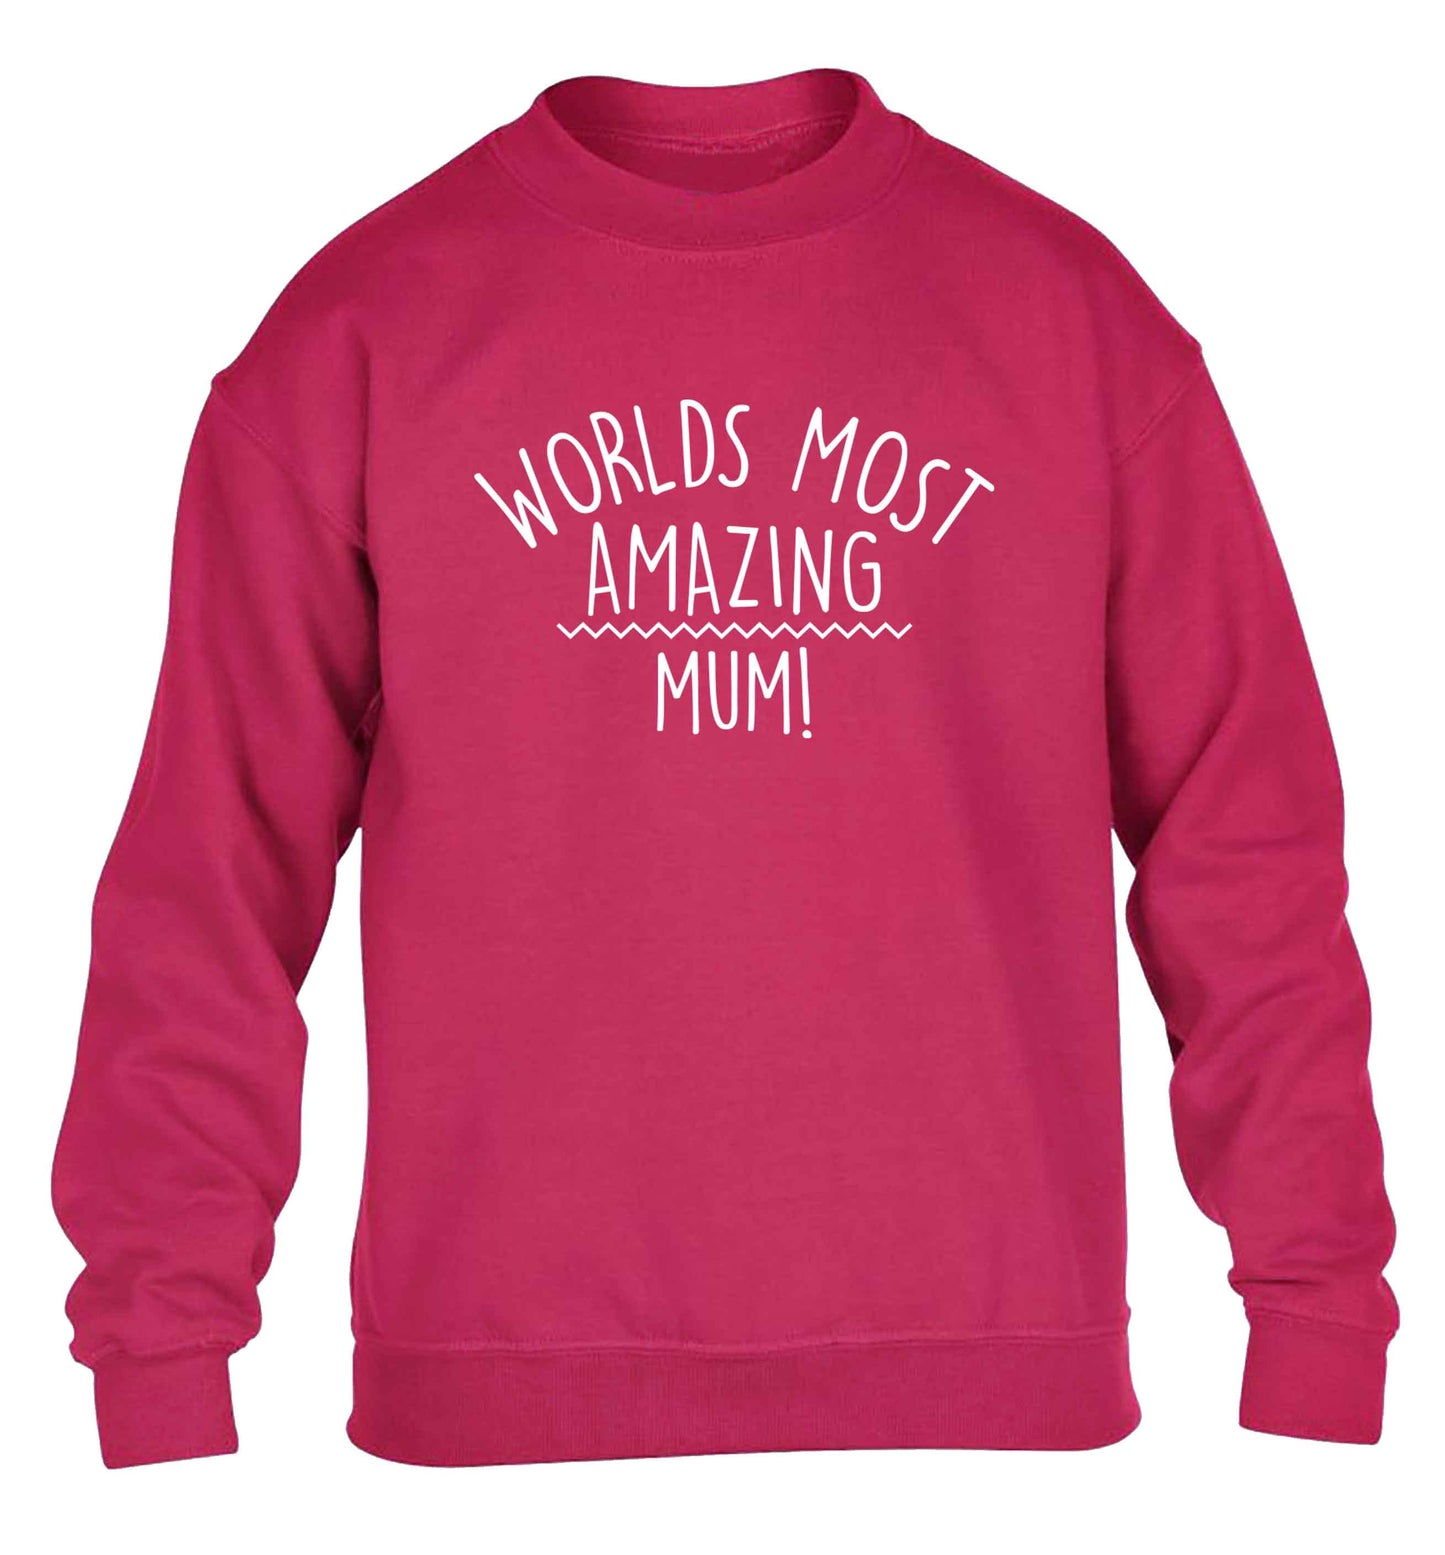 Worlds most amazing mum children's pink sweater 12-13 Years